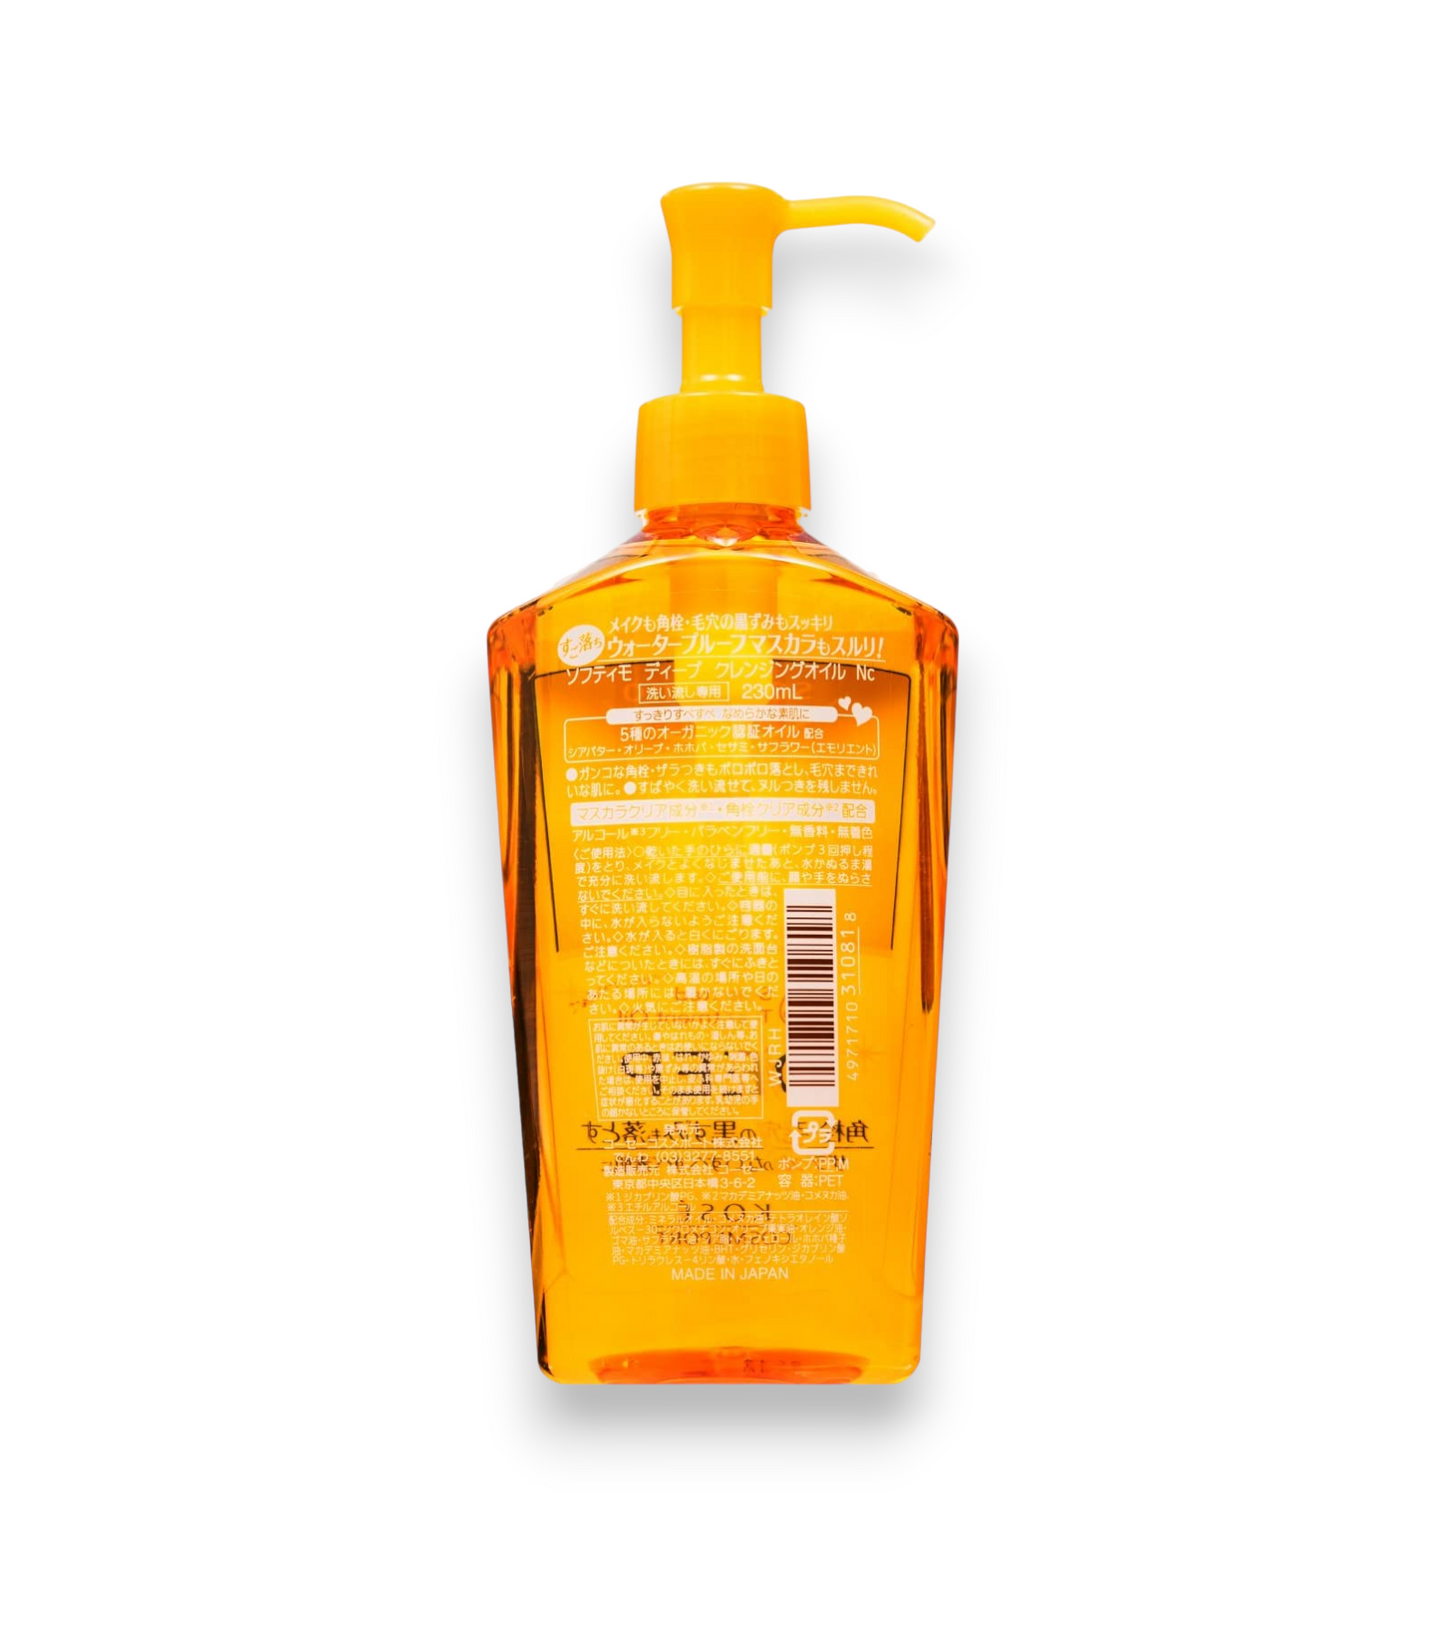 Huile démaquillante / nettoyante - KOSE Softymo Deep Cleansing Oil - 230ml : Une formule légère et douce pour une peau propre et nette